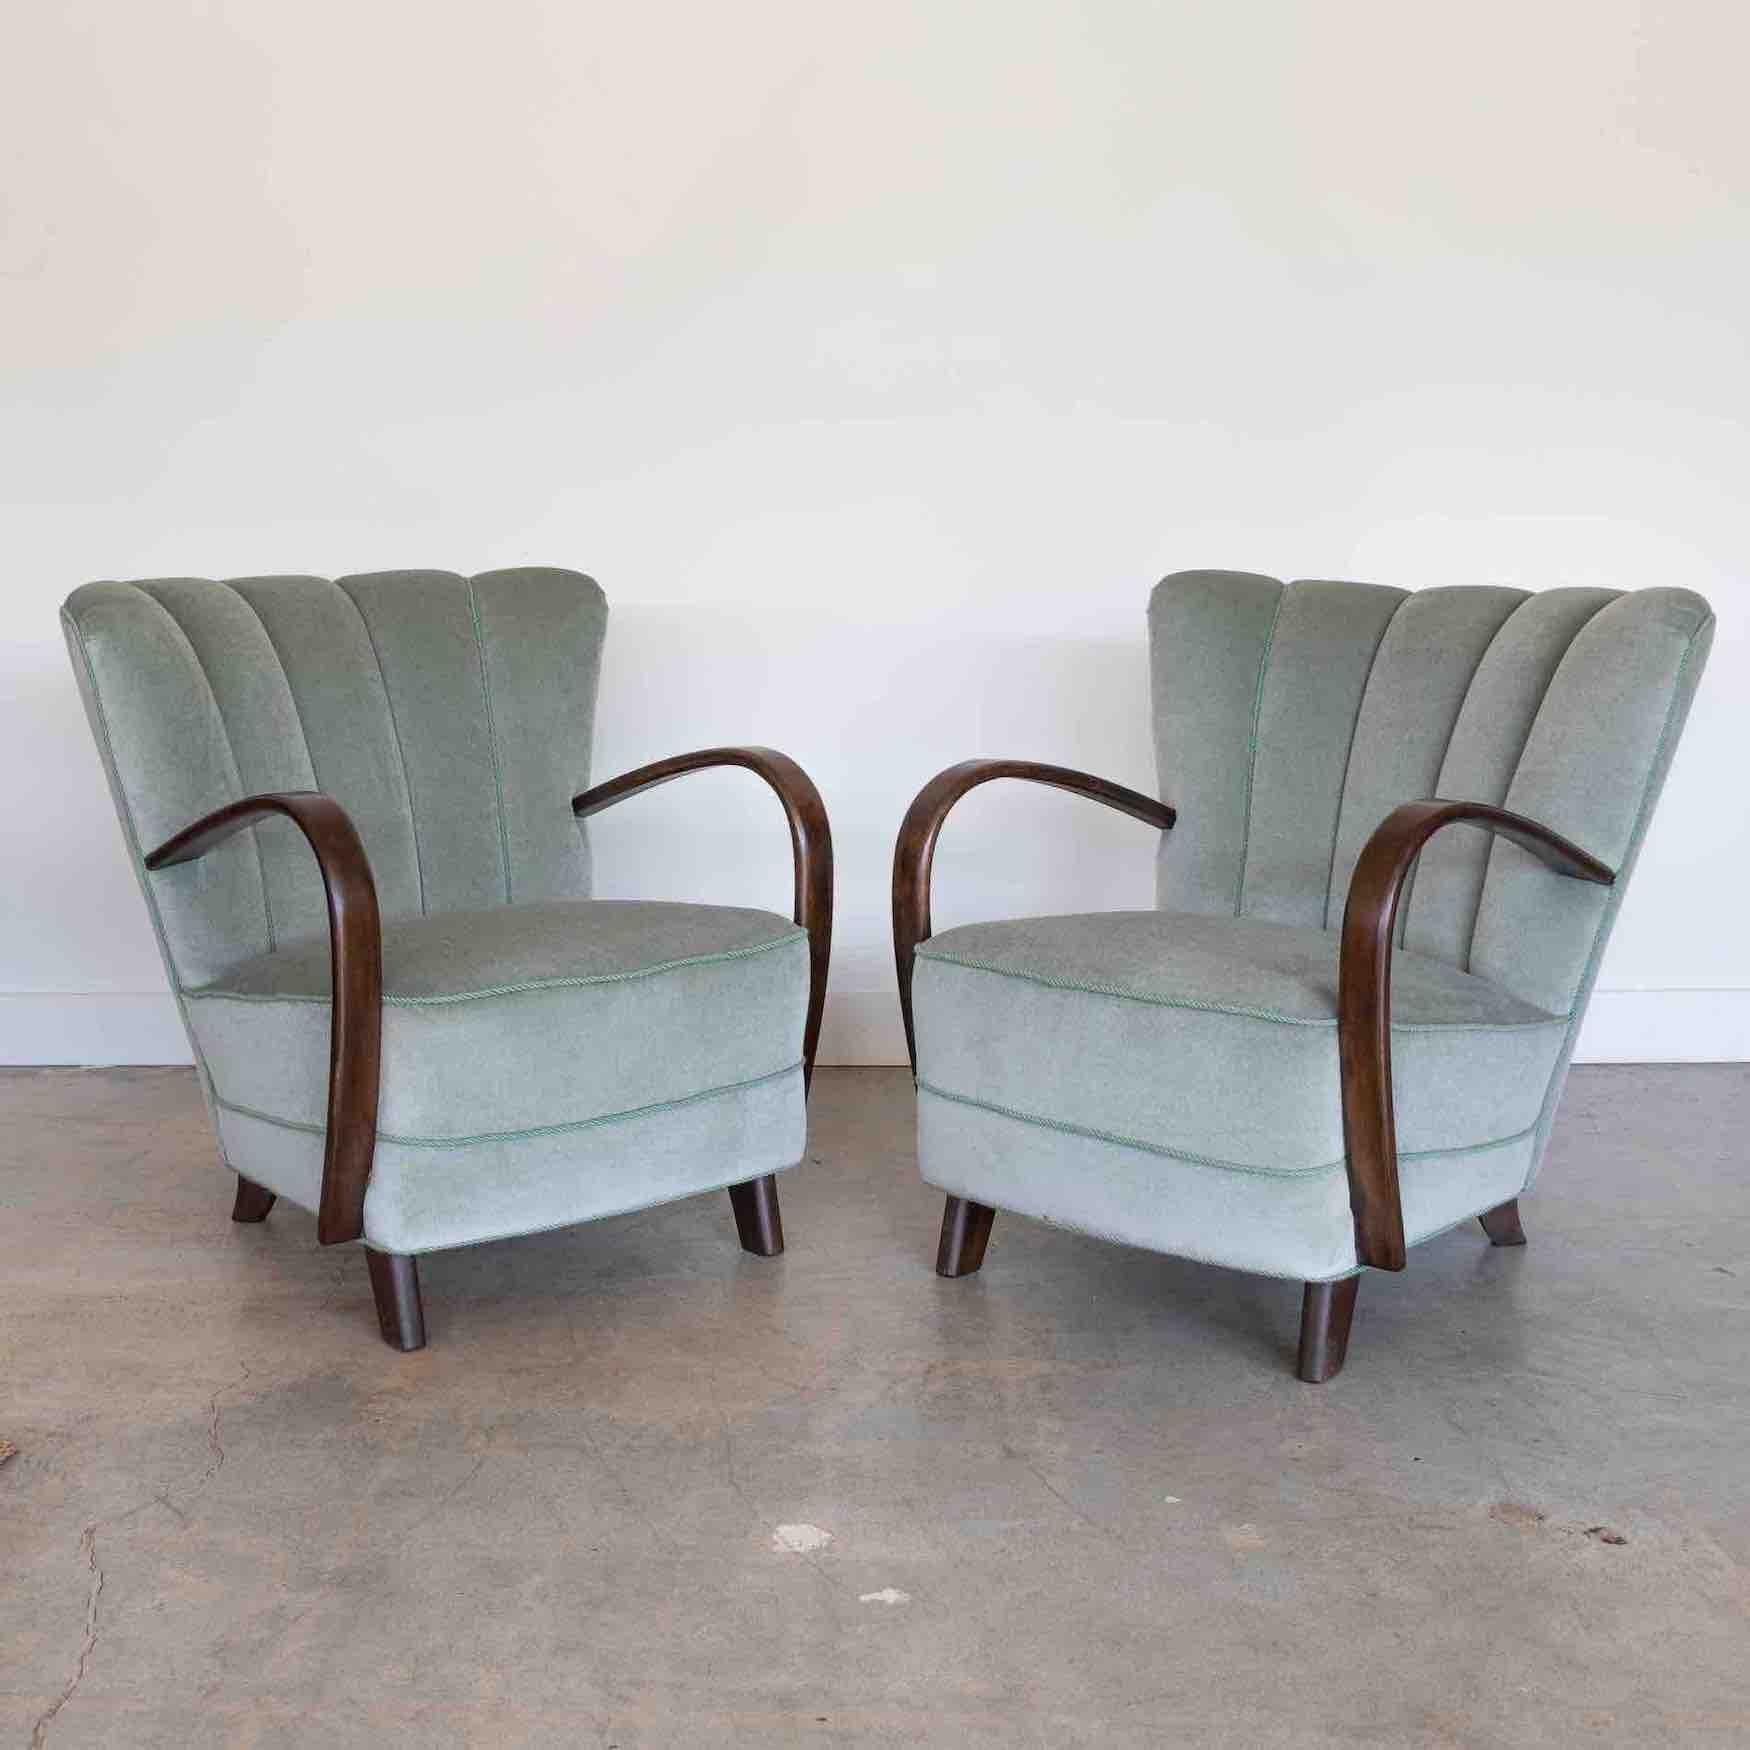 Superbe paire de chaises de salon Art déco rembourrées, Danemark, années 1930. Nouvellement rembourré en mohair italien doux de couleur vert seafoam avec des détails de passepoil complémentaires. Accoudoirs en bois joliment incurvés et pieds effilés